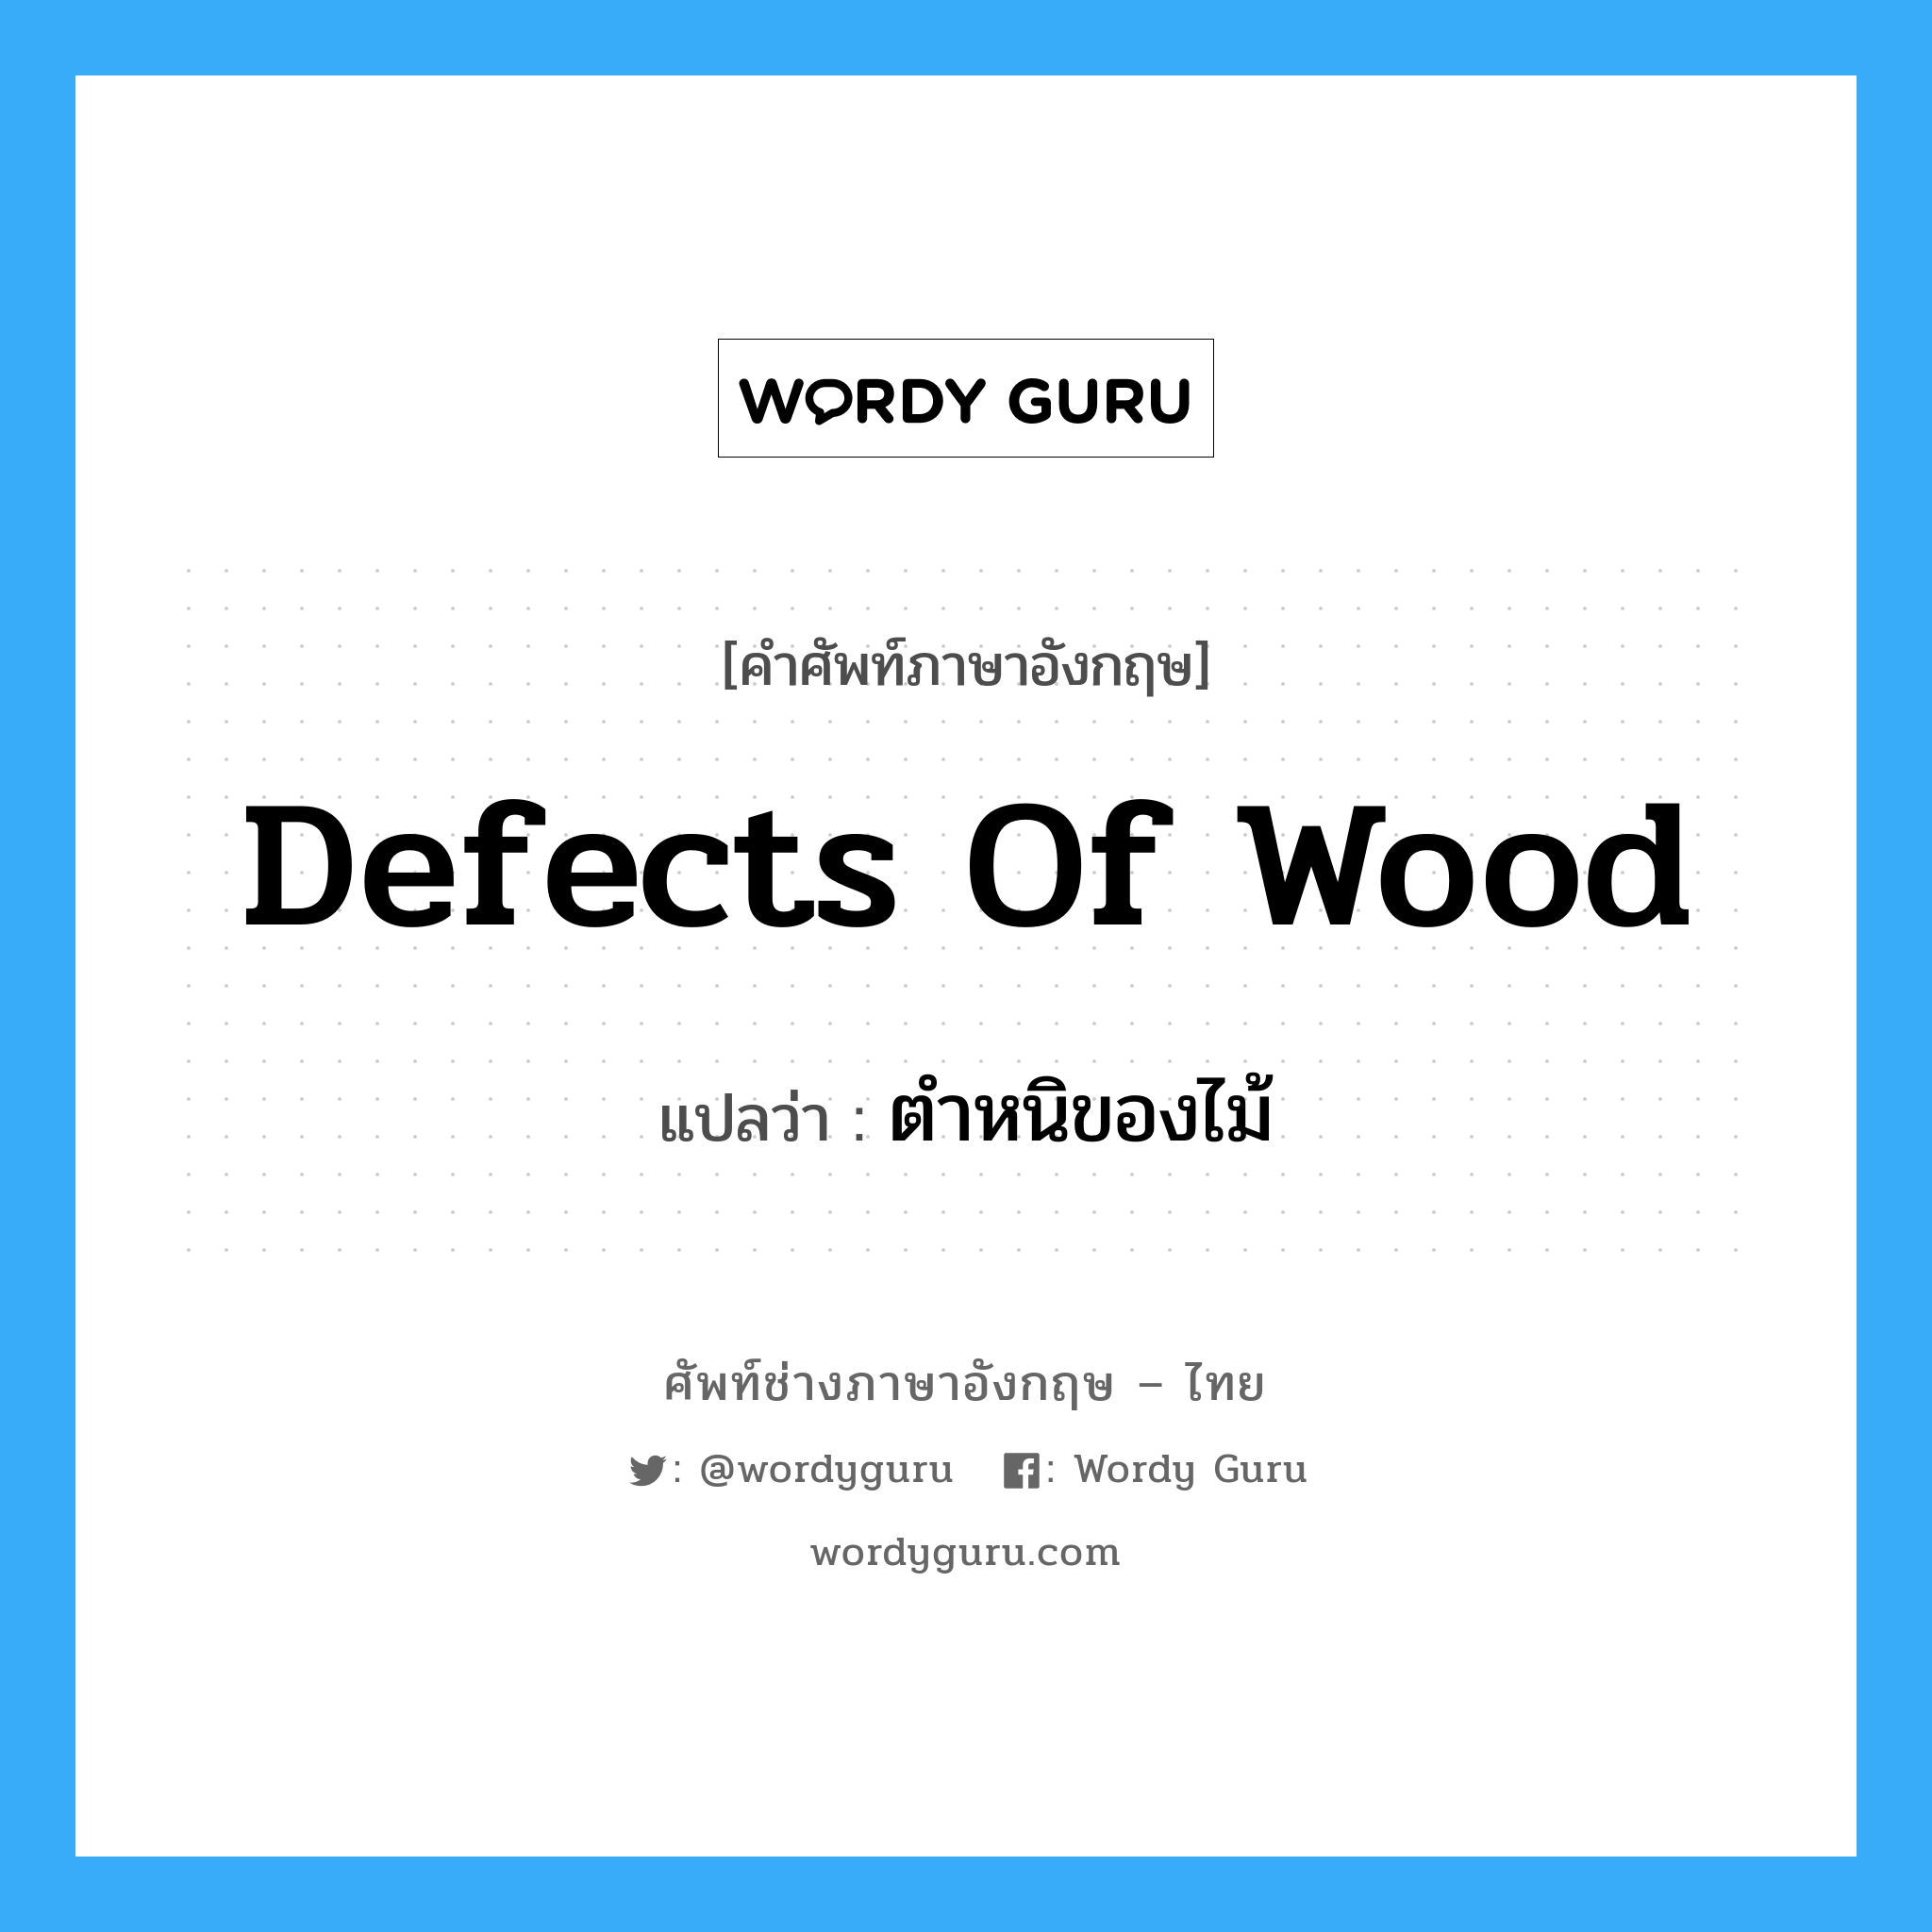 defects of wood แปลว่า?, คำศัพท์ช่างภาษาอังกฤษ - ไทย defects of wood คำศัพท์ภาษาอังกฤษ defects of wood แปลว่า ตำหนิของไม้